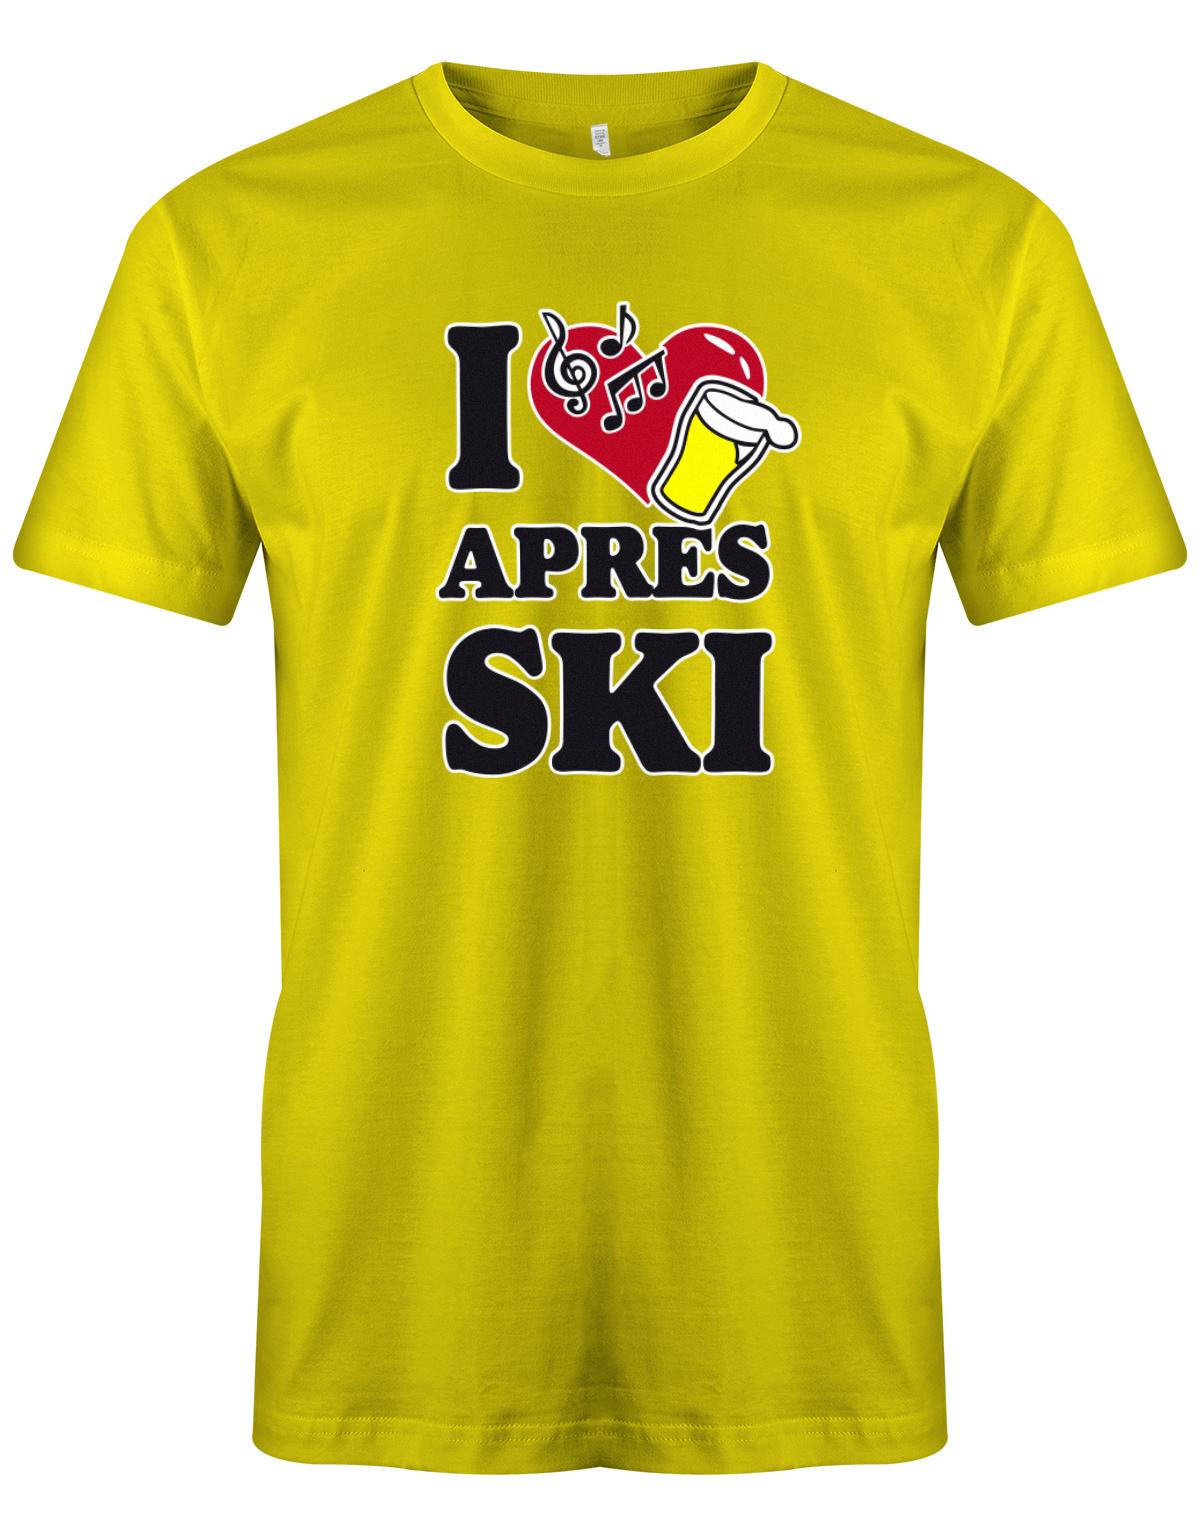 I-love-Apres-Ski-Herren-Shirt-Gelb